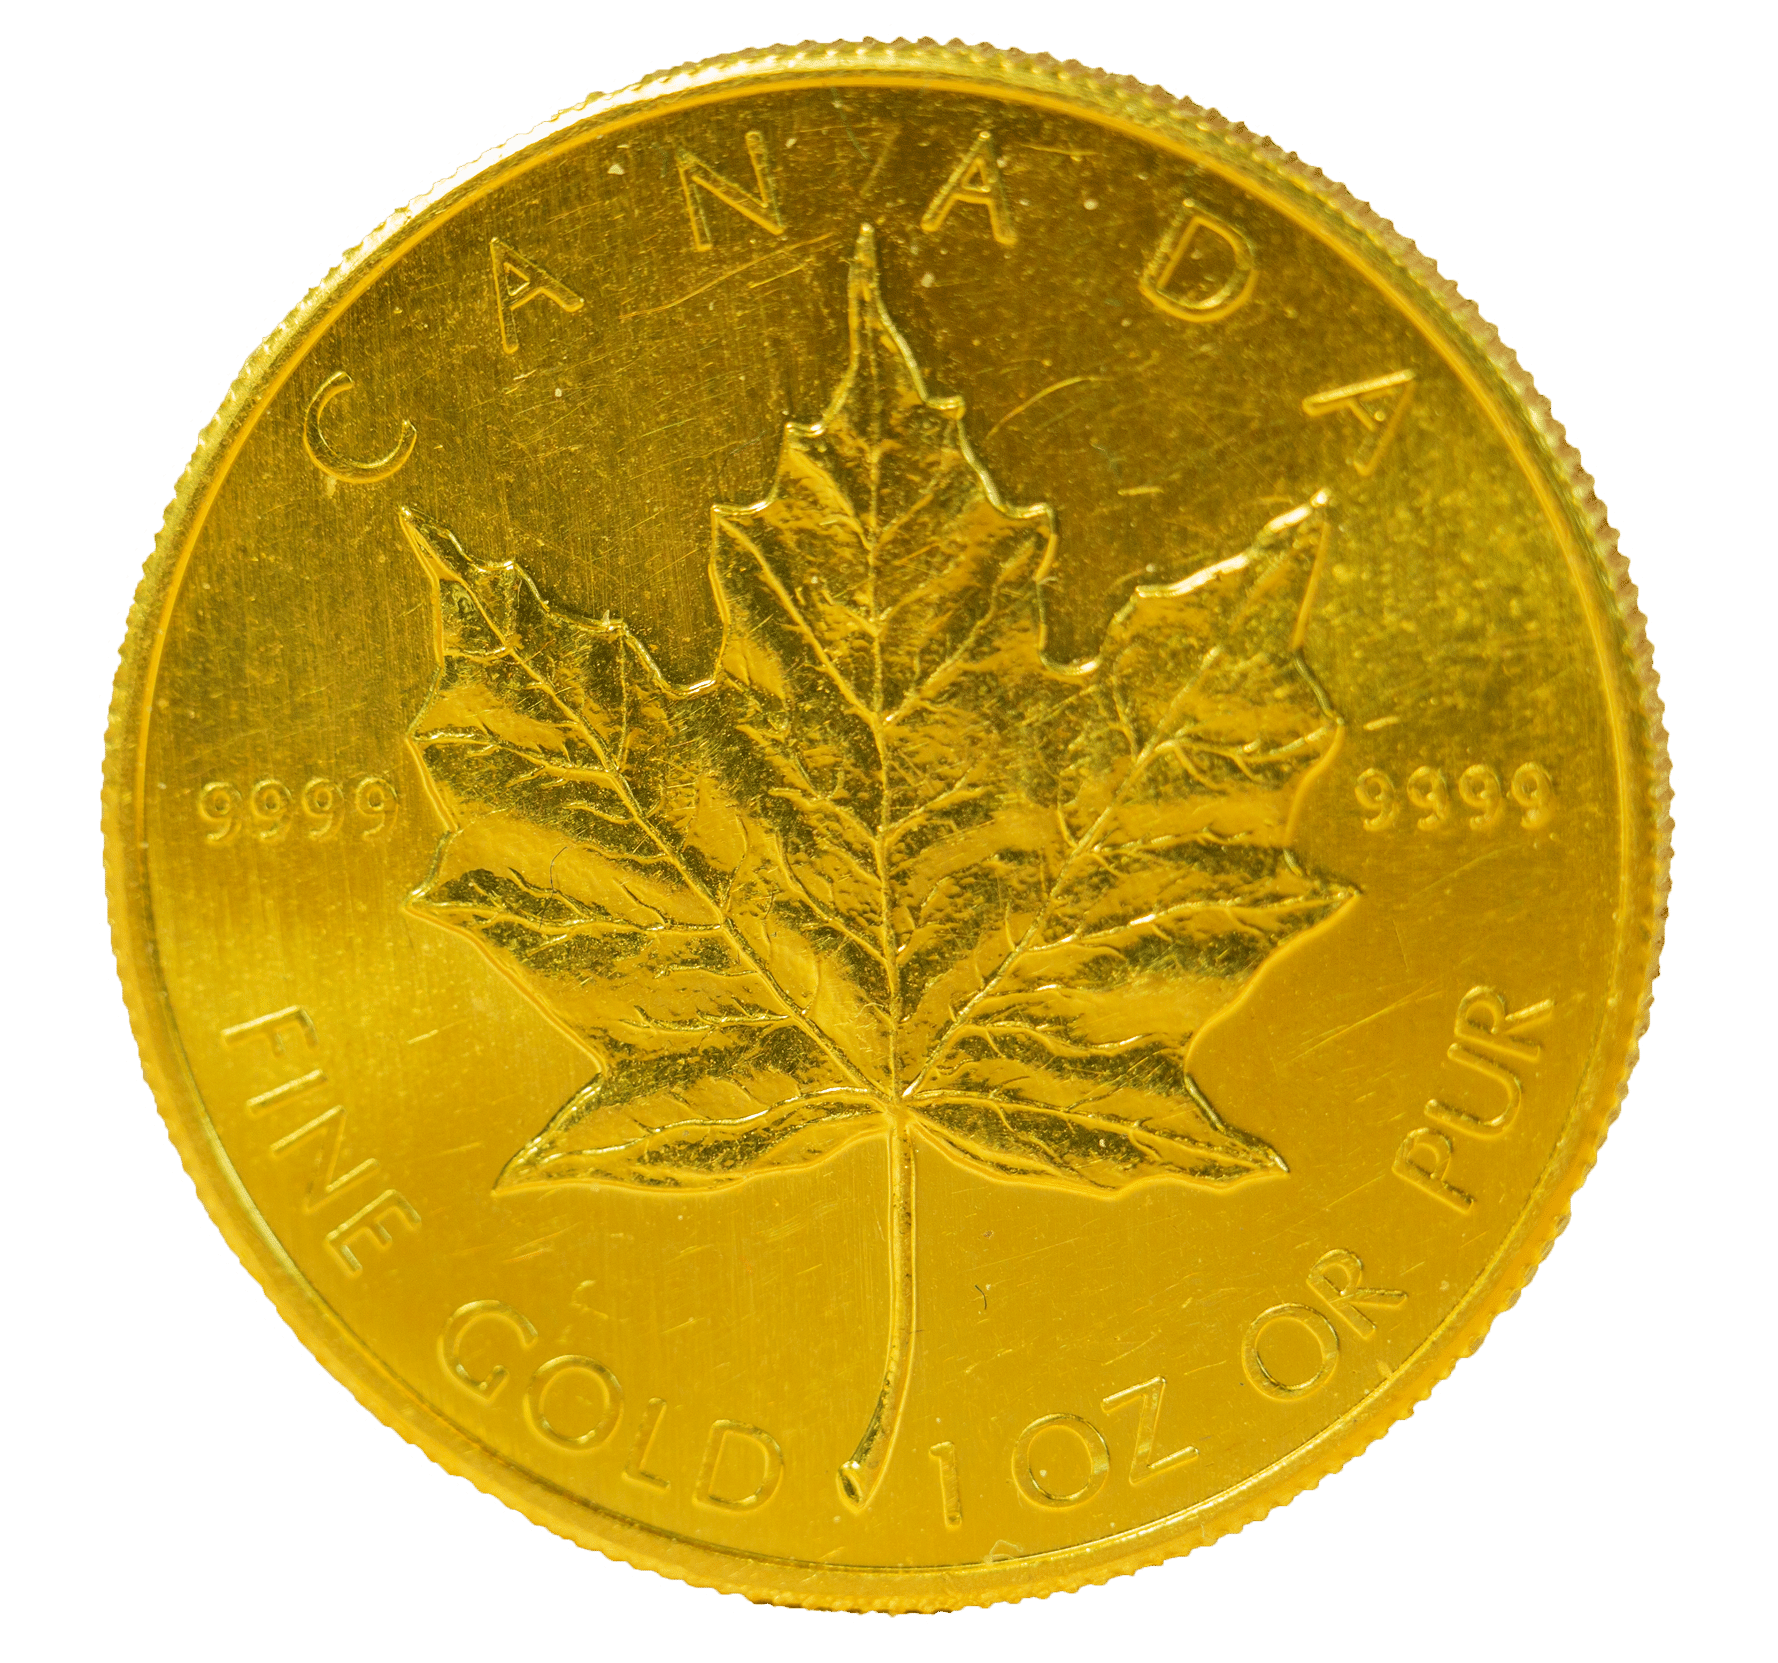 1-ounce Gold Maple Leaf coin on a velvet surface.